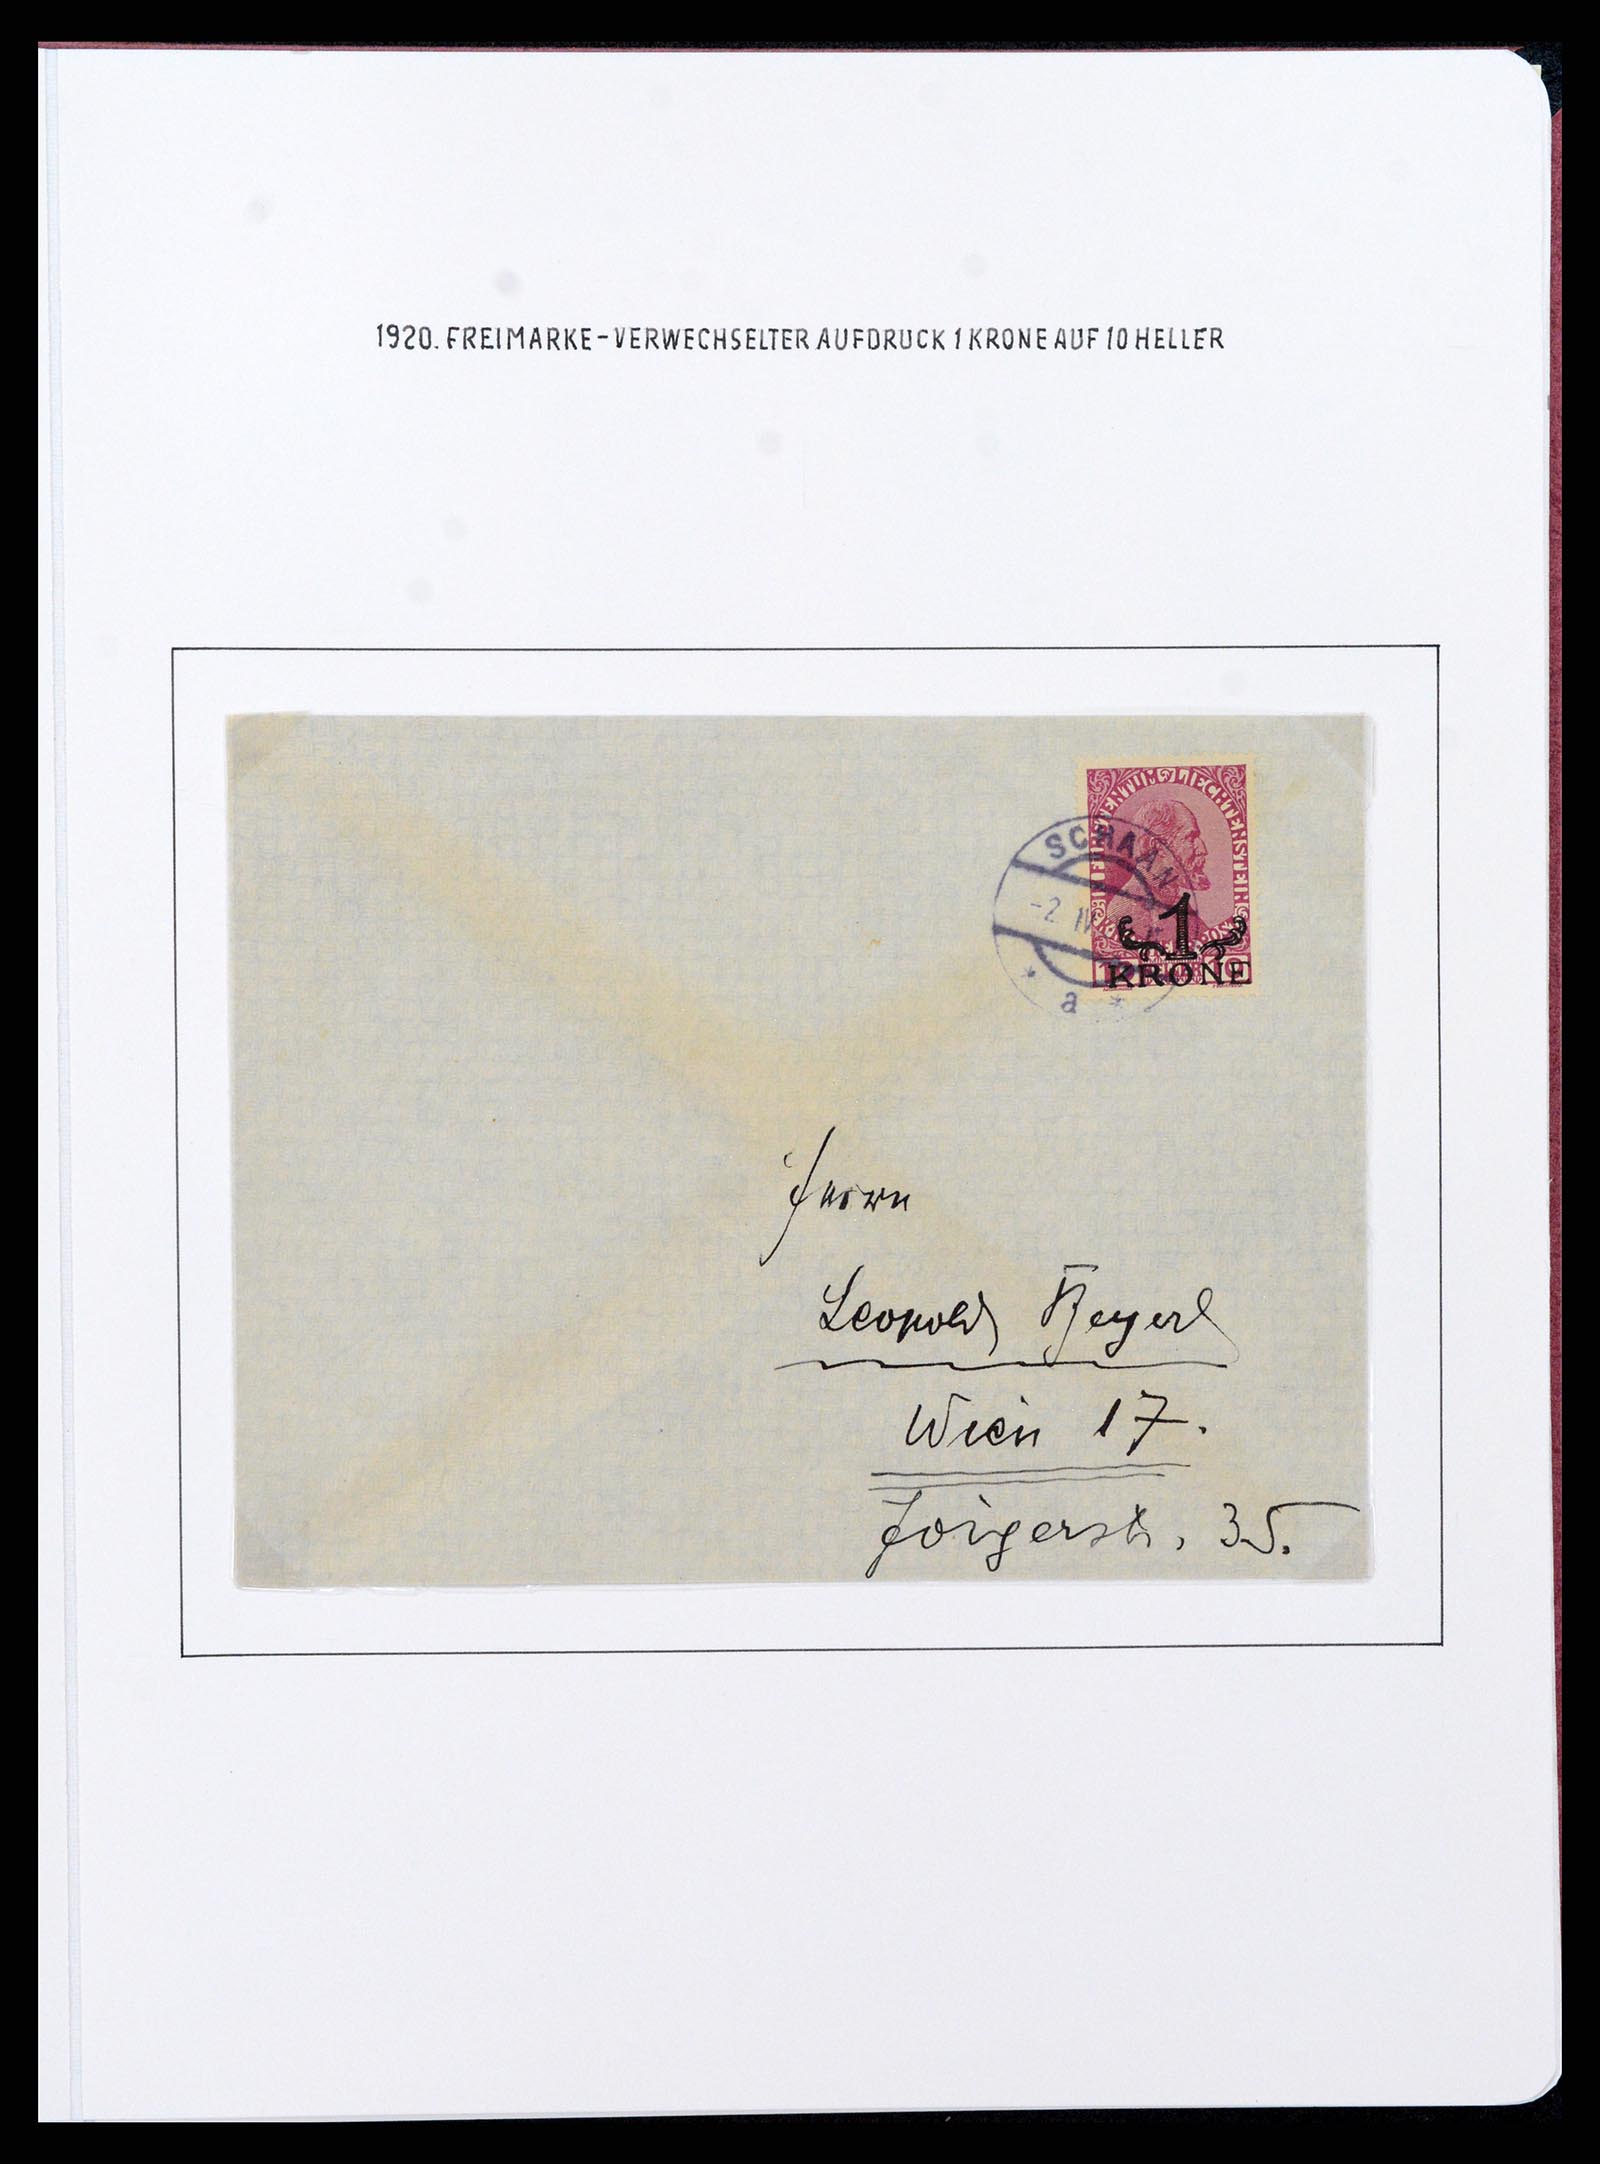 37150 0044 - Stamp collection 37150 Liechtenstein supercollection 1912-1962.